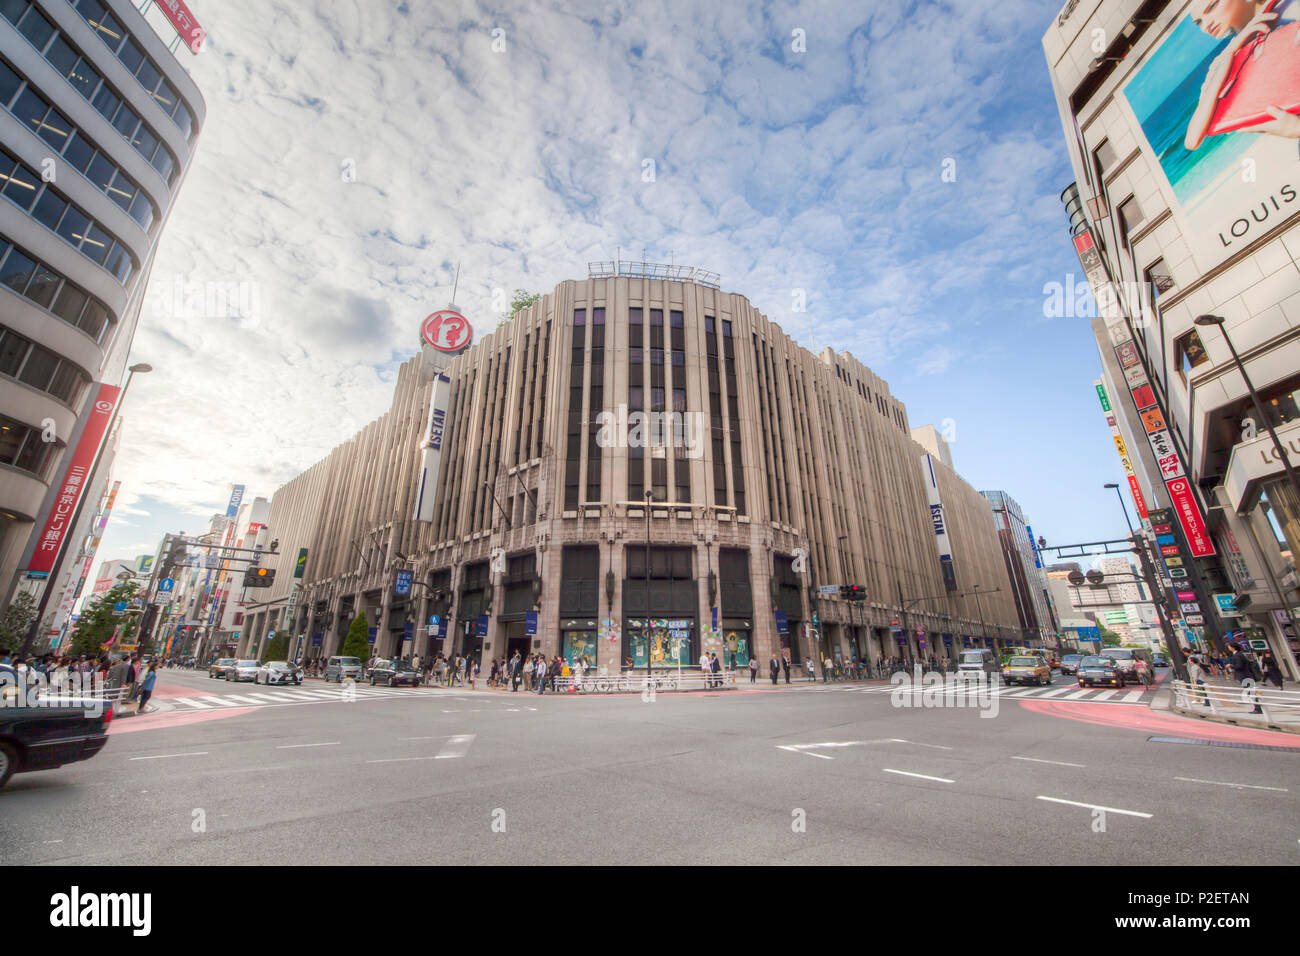 Isetan Department Store in Shinjuku, Tokyo, Japan Stock Photo